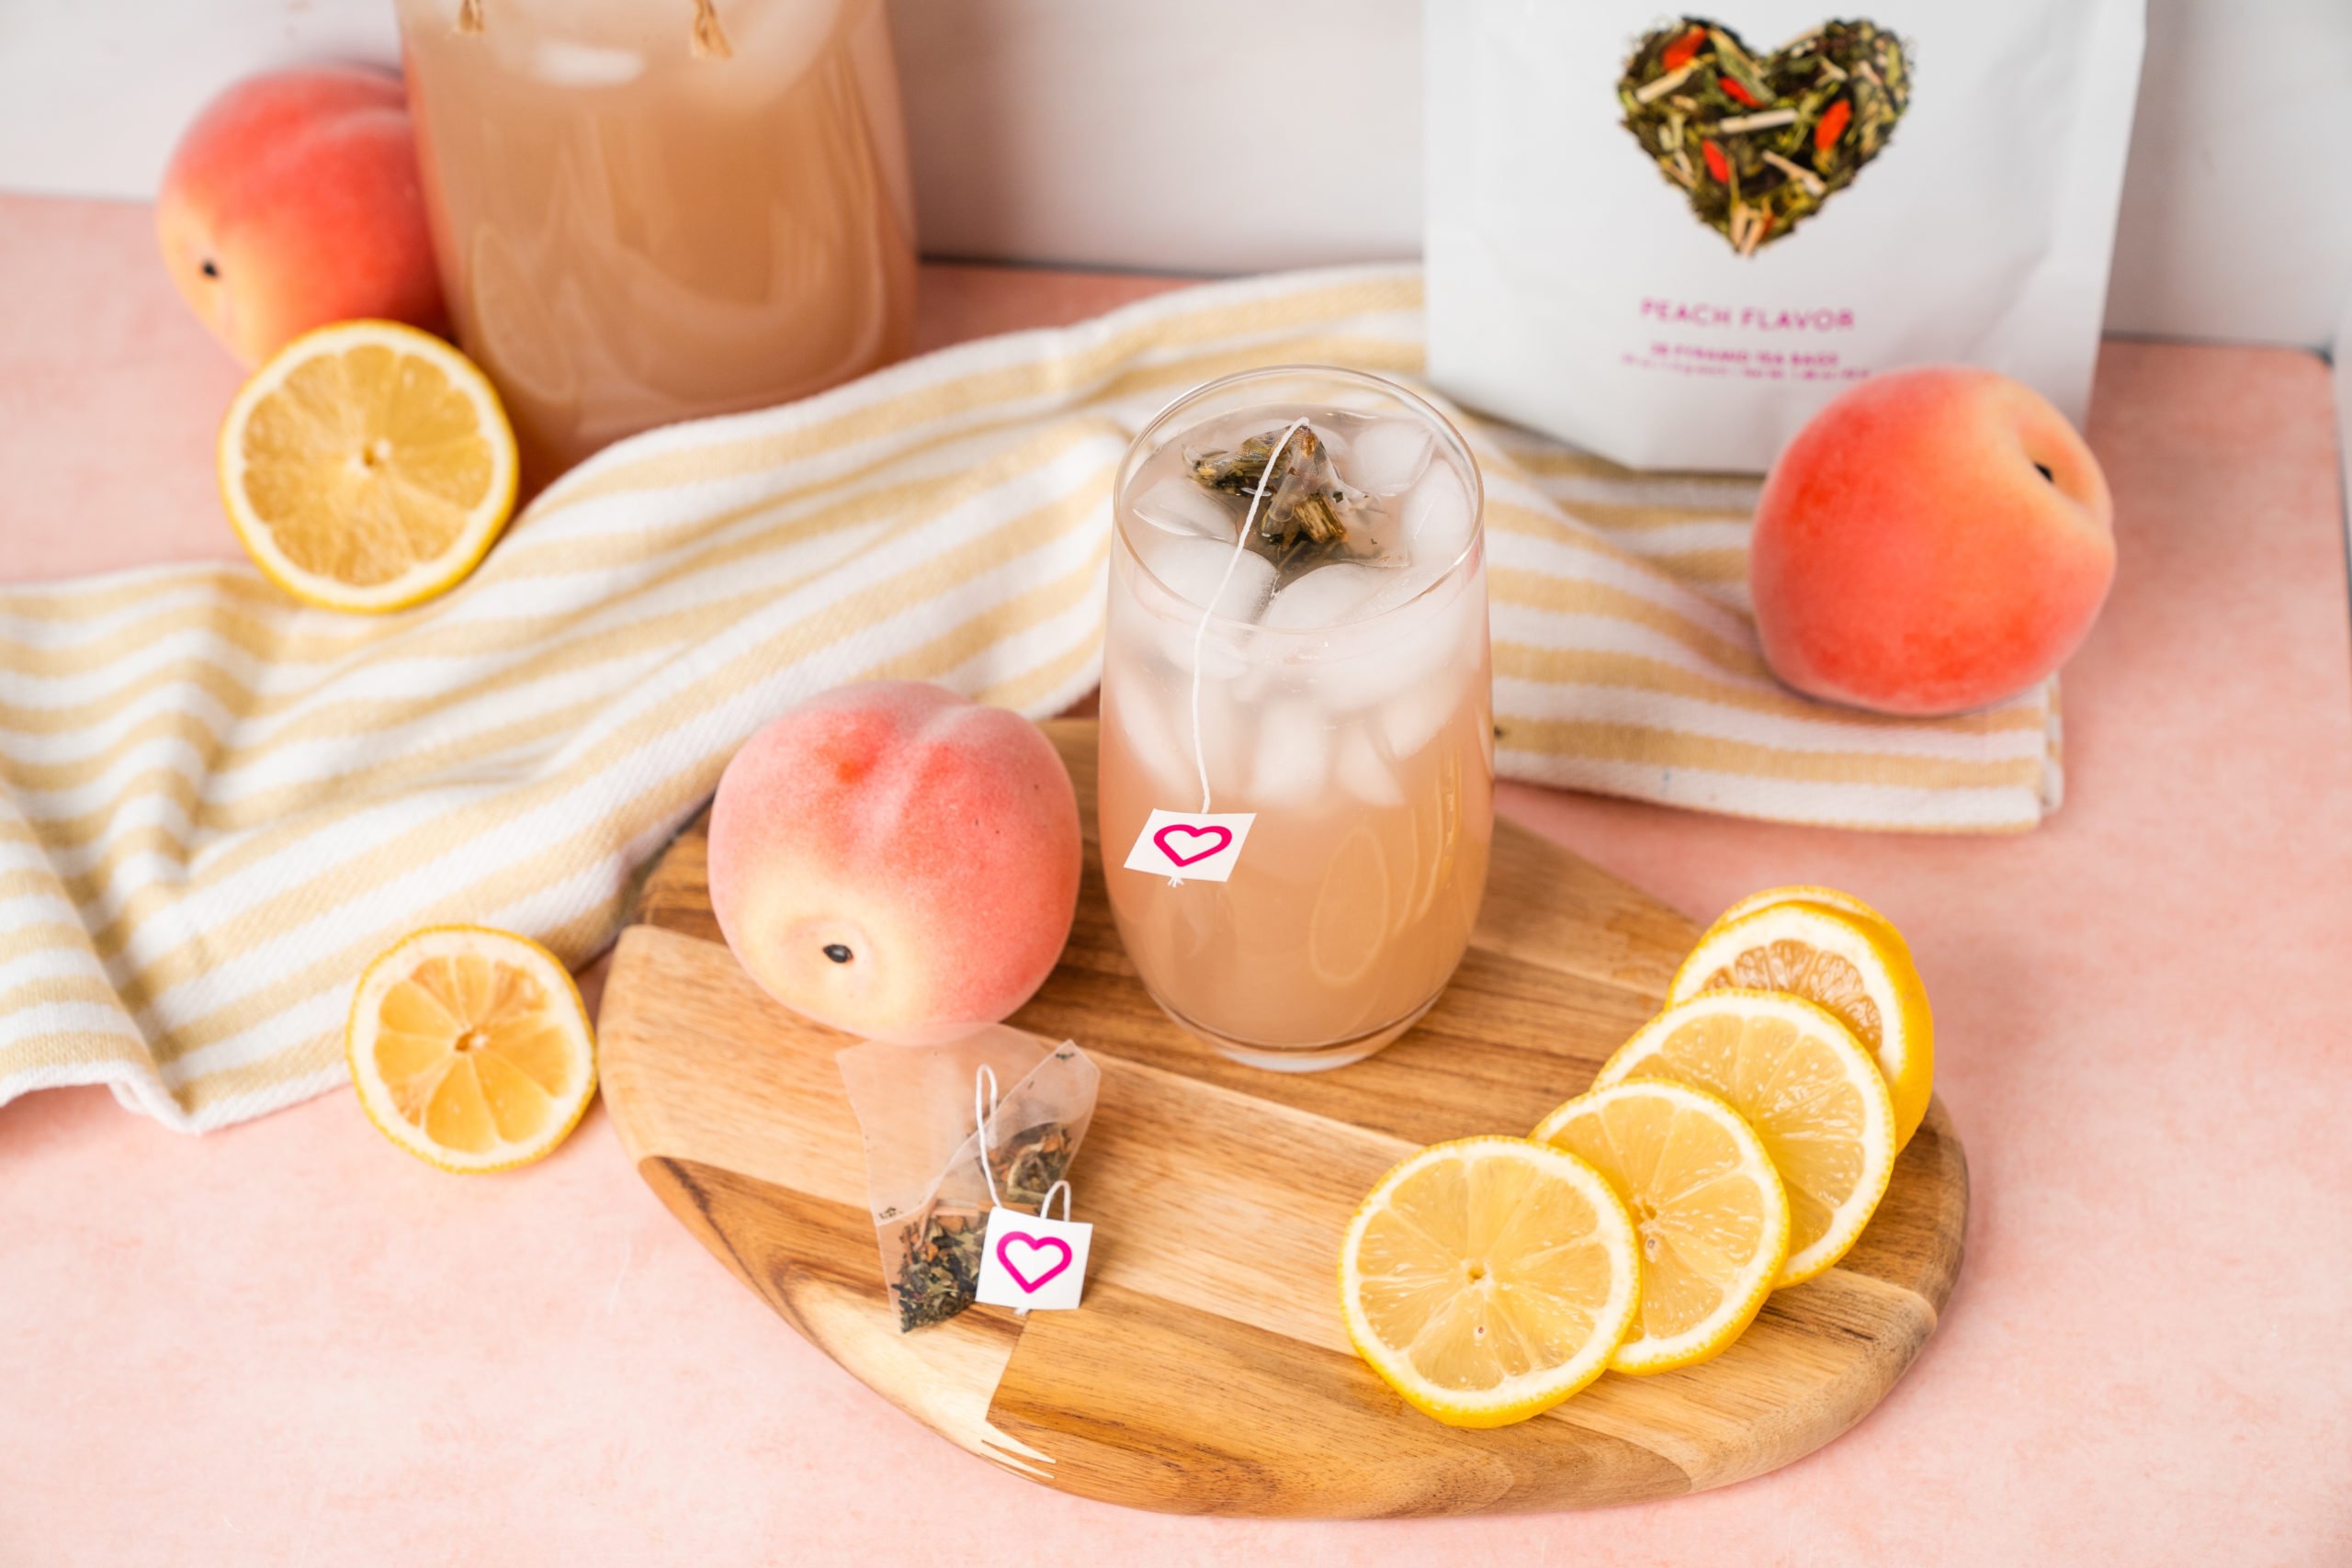 Iced Peach Green Tea Lemonade - The Healthful Ideas